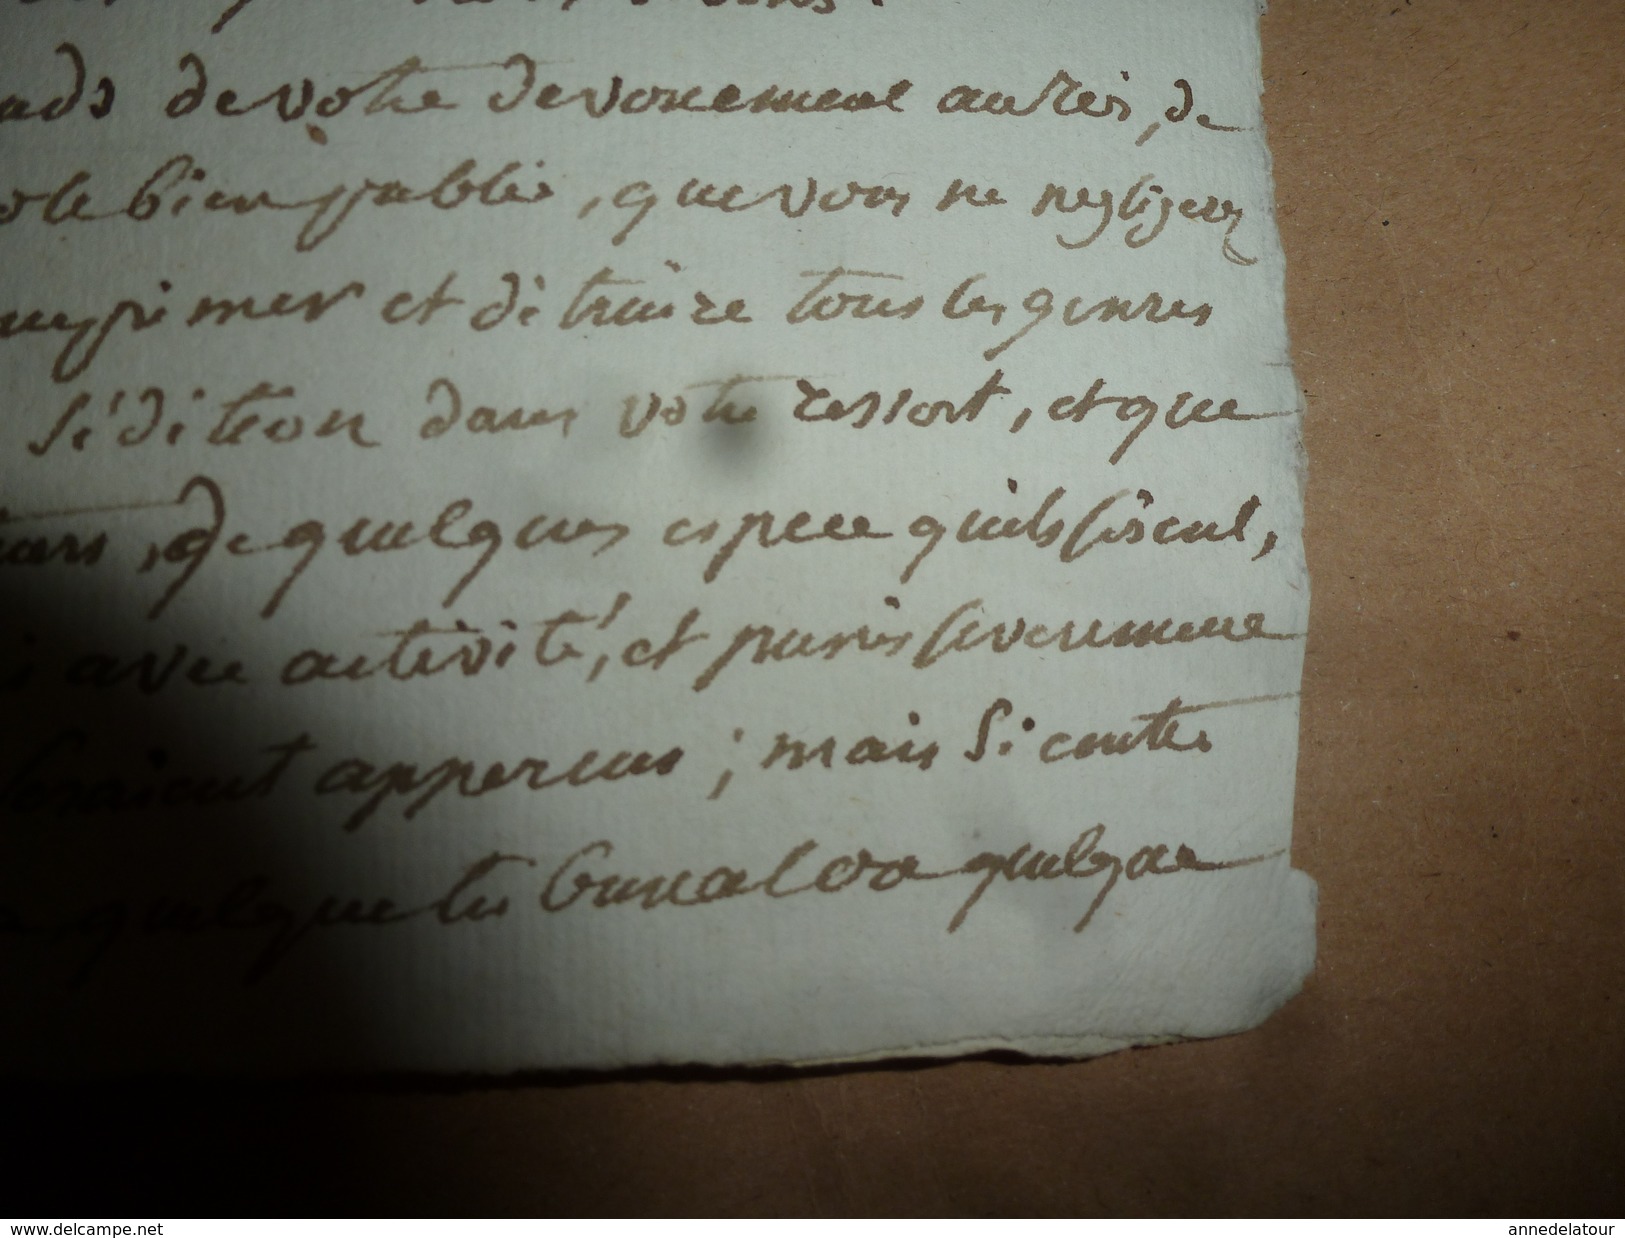 1815 Lettre de MARBOIS pour appliquer loi nouvelle sur la REPRESSION DES CRIS SEDITIEUX et PROVOCATION A LA REVOLTE,etc